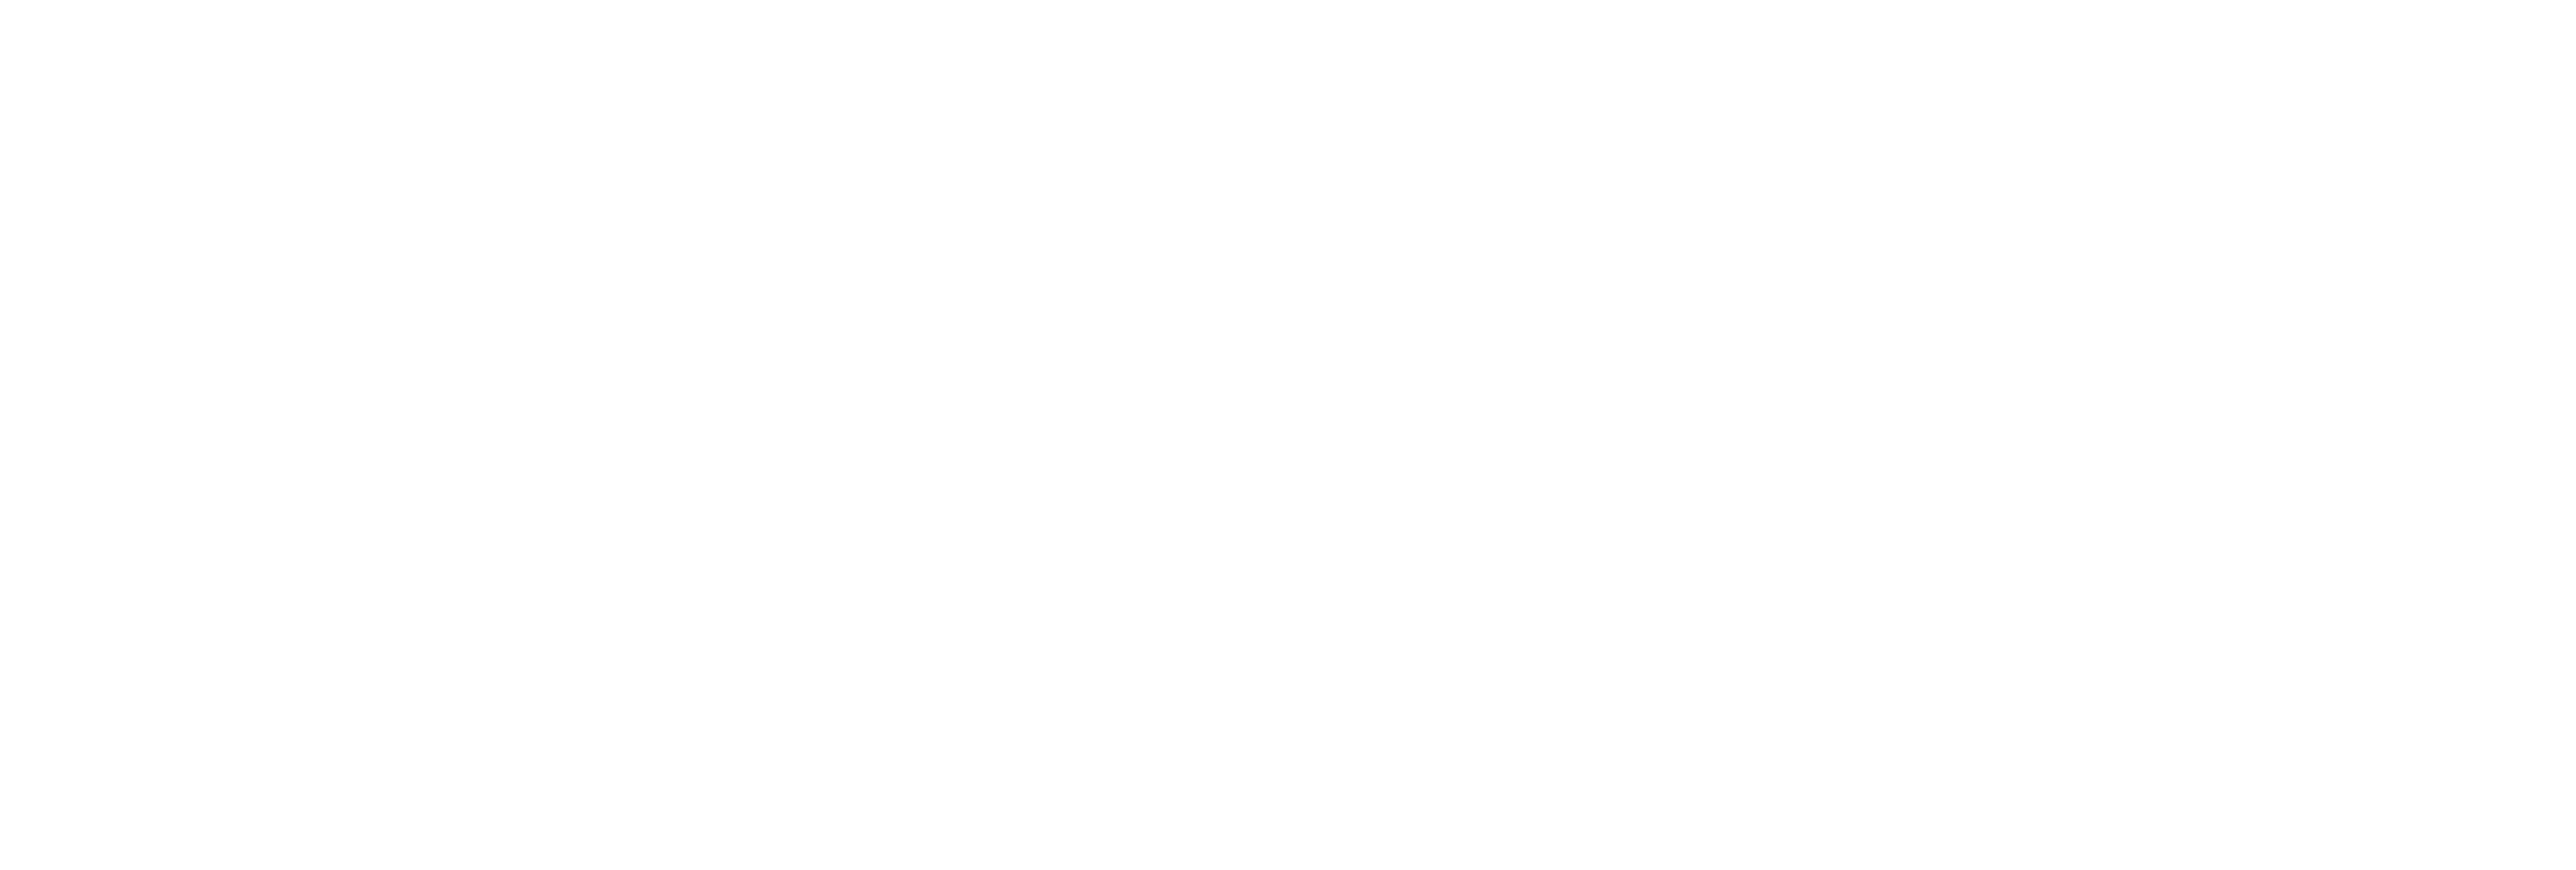 AniCura Centrum voor Medische Beeldvorming Vetimacs te Brussel logo